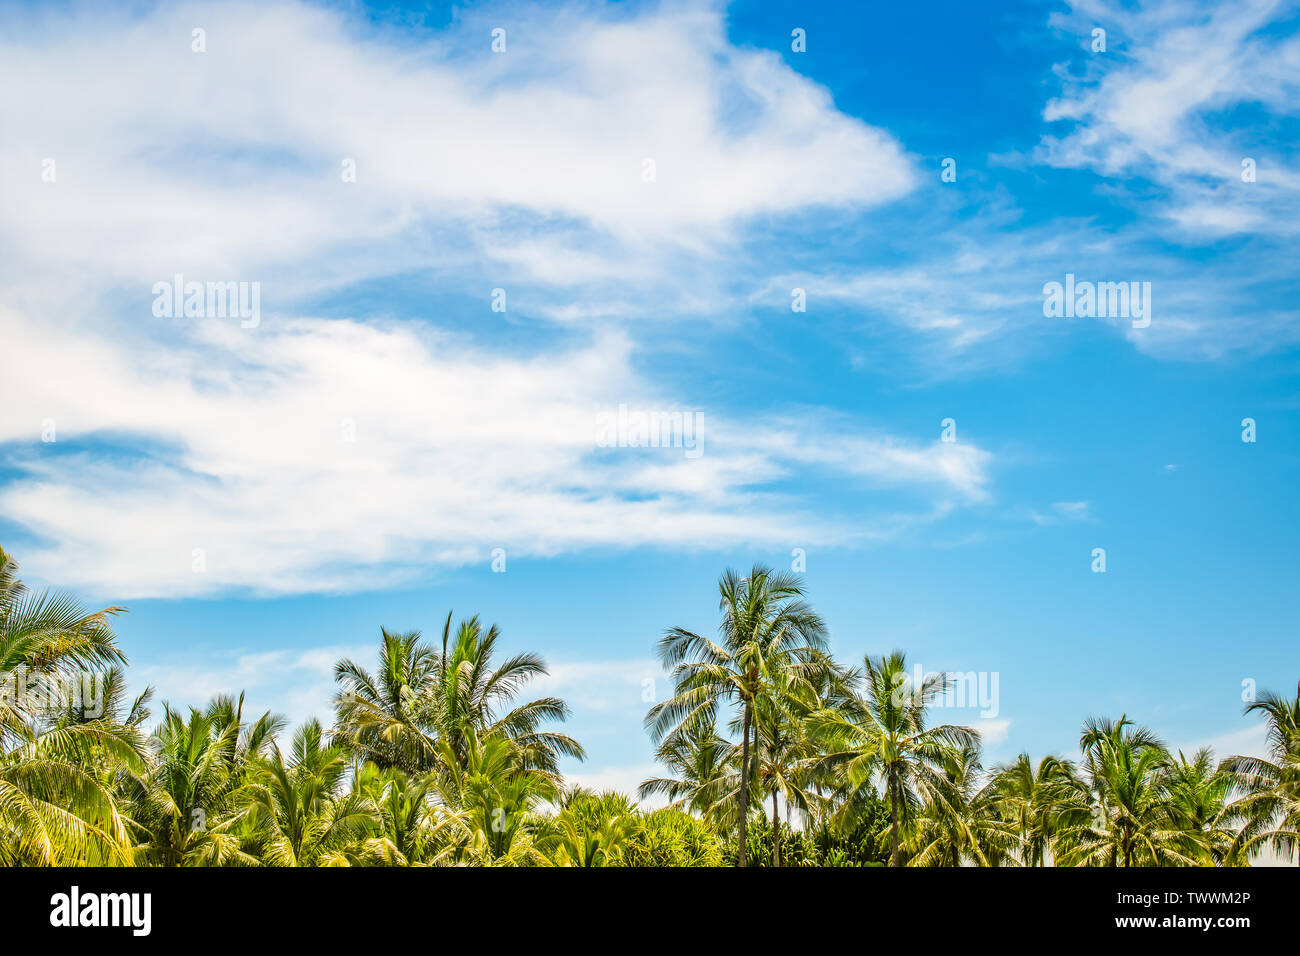 Fond d'été plage tropicale avec des cocotiers sur fond de ciel bleu et nuages blancs. L'espace pour le texte. Banque D'Images